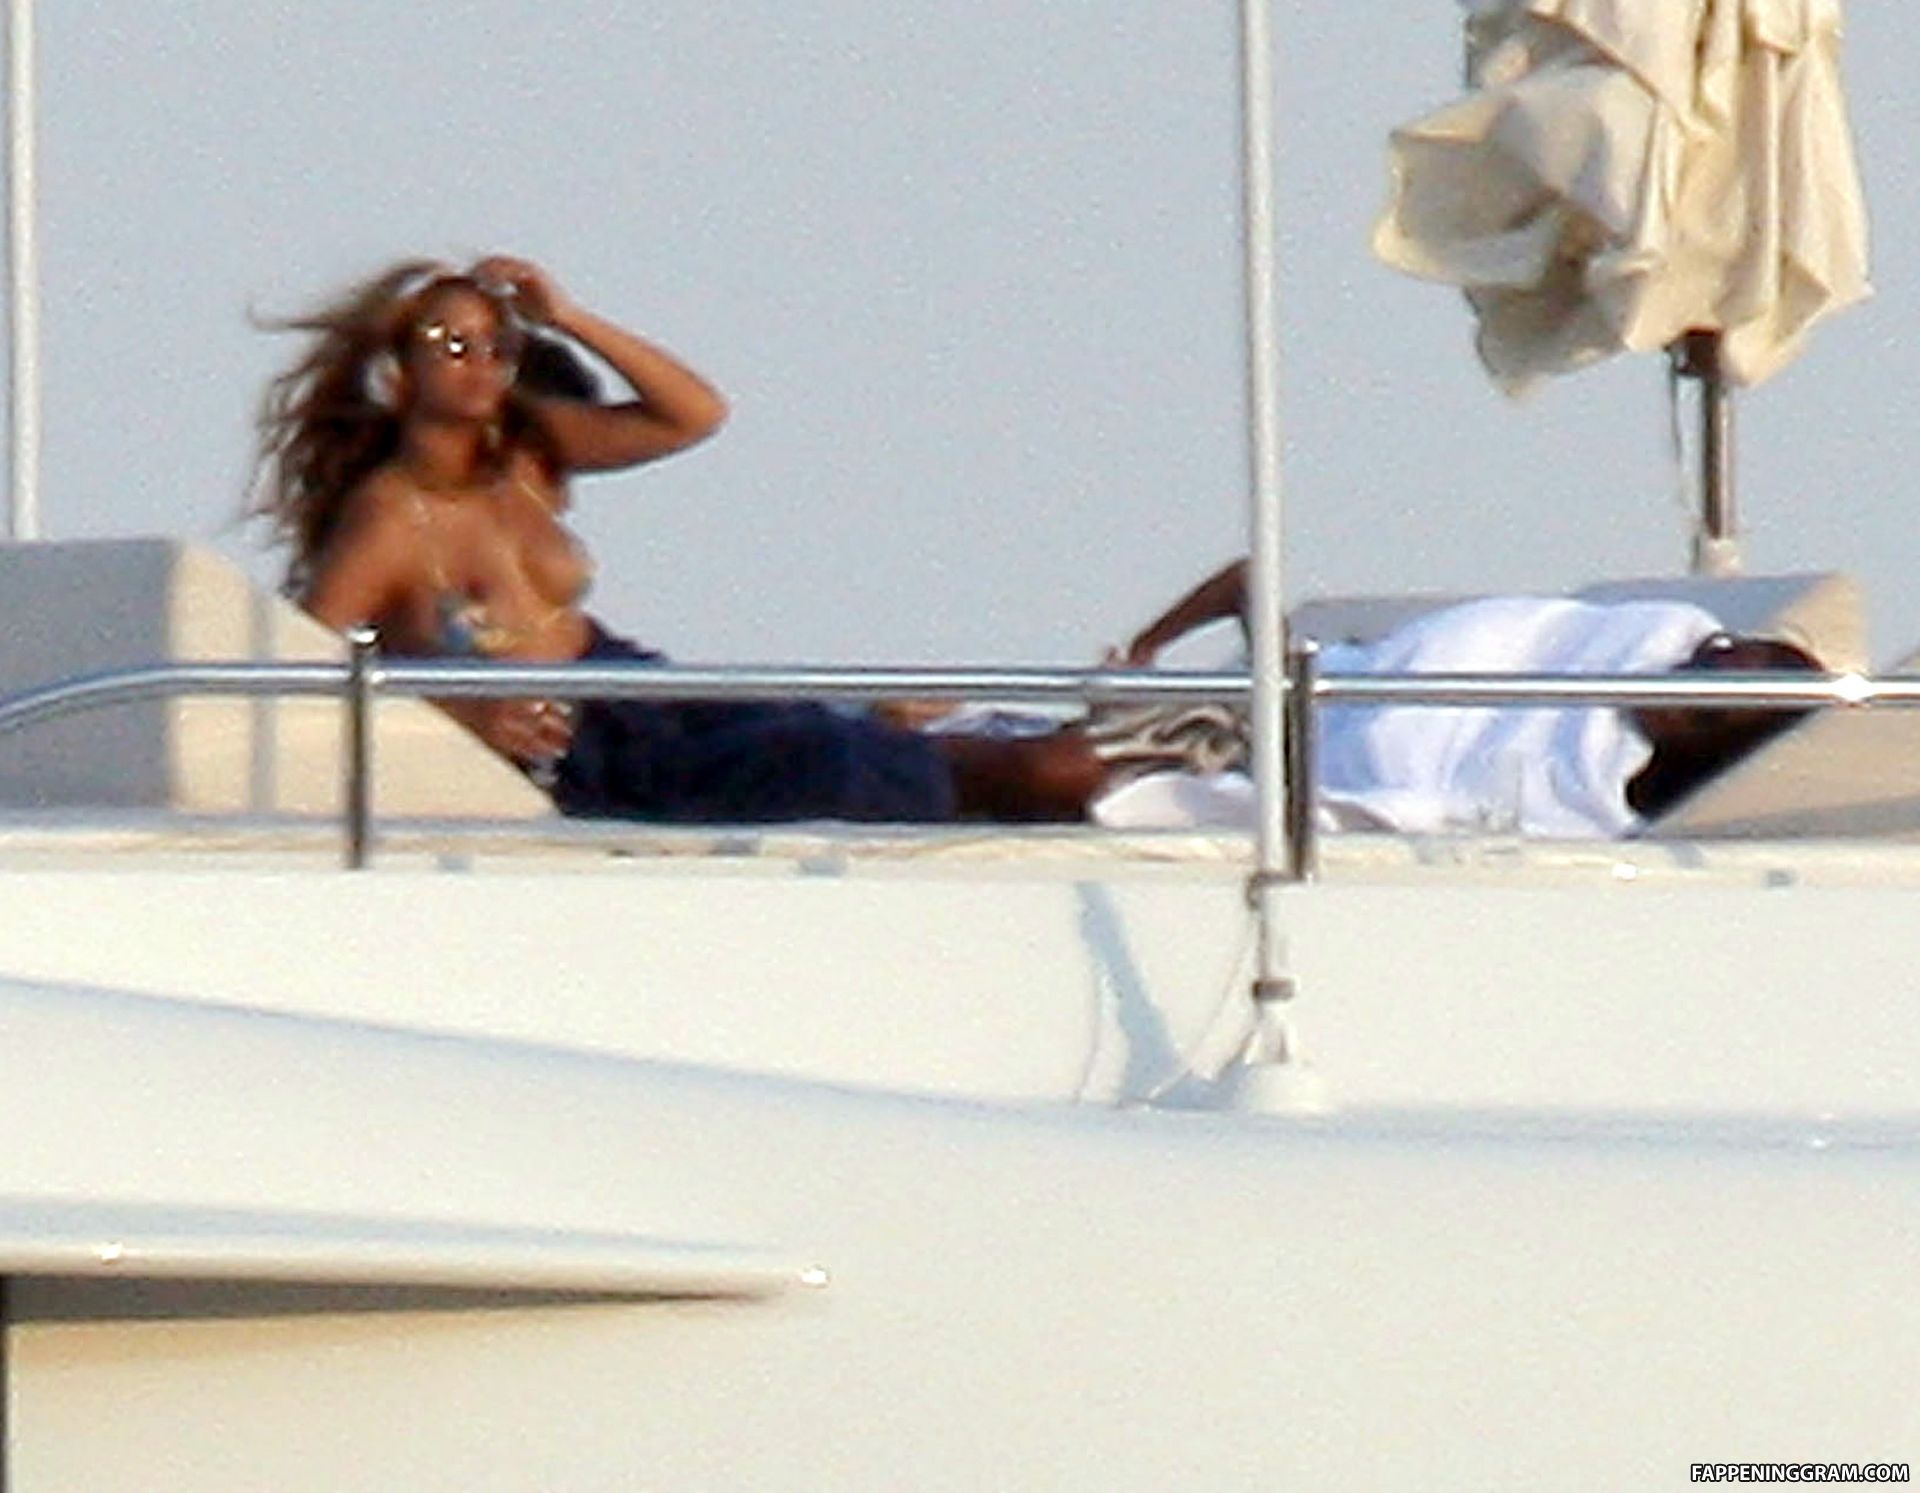 Beyoncé Knowles Nude